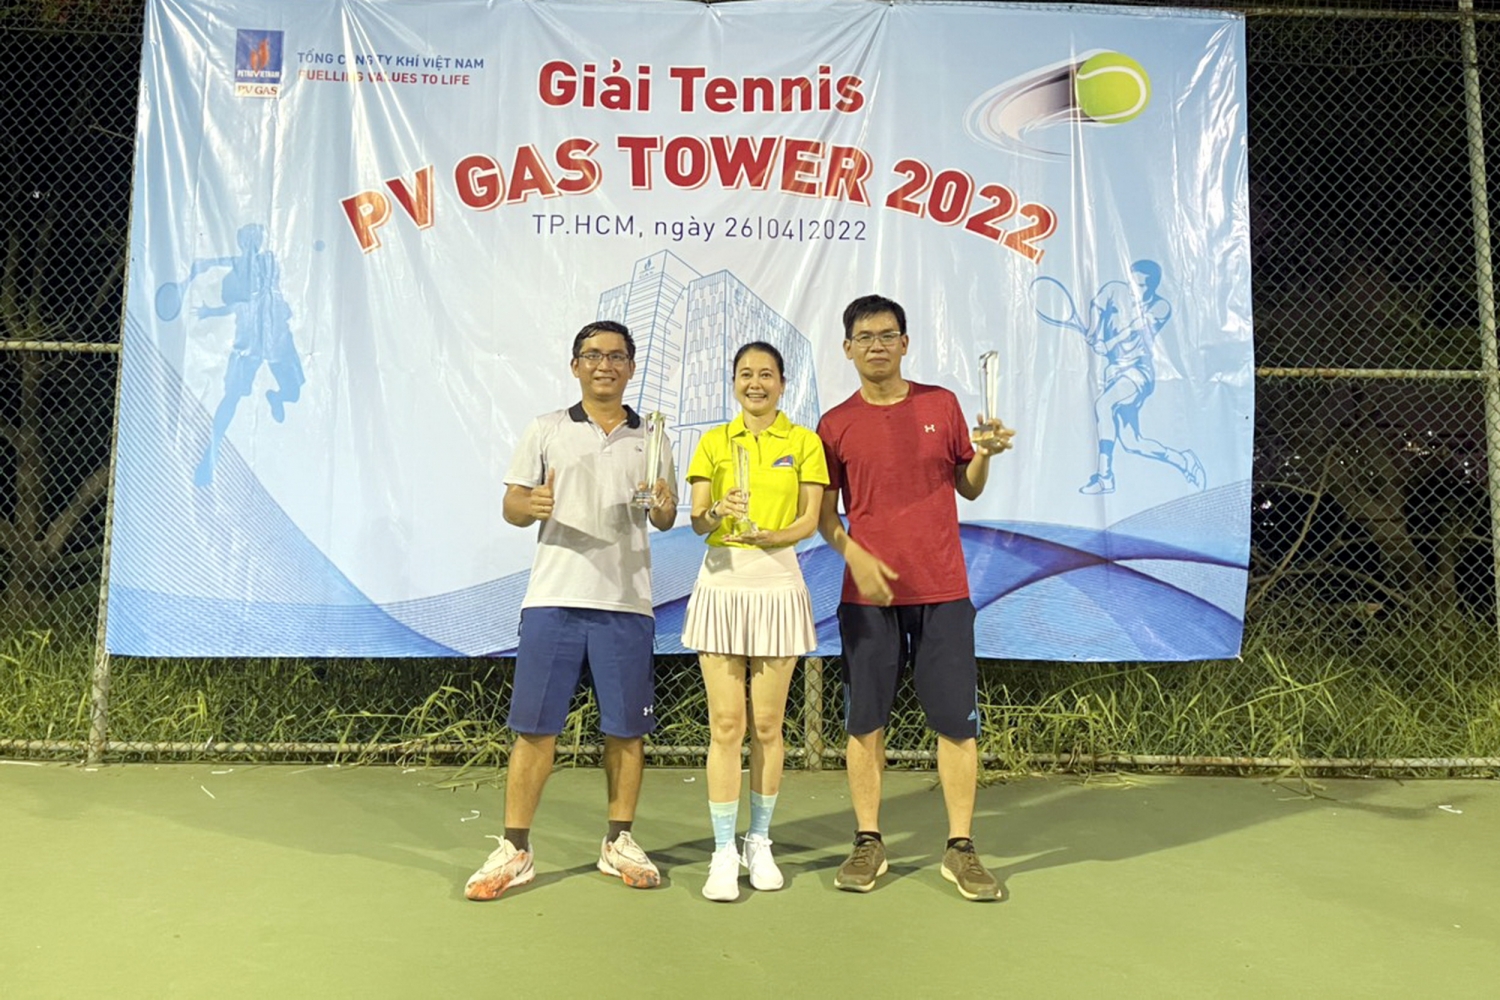 Giải Tennis PV GAS Tower năm 2022 thành chào mừng Tháng Công nhân